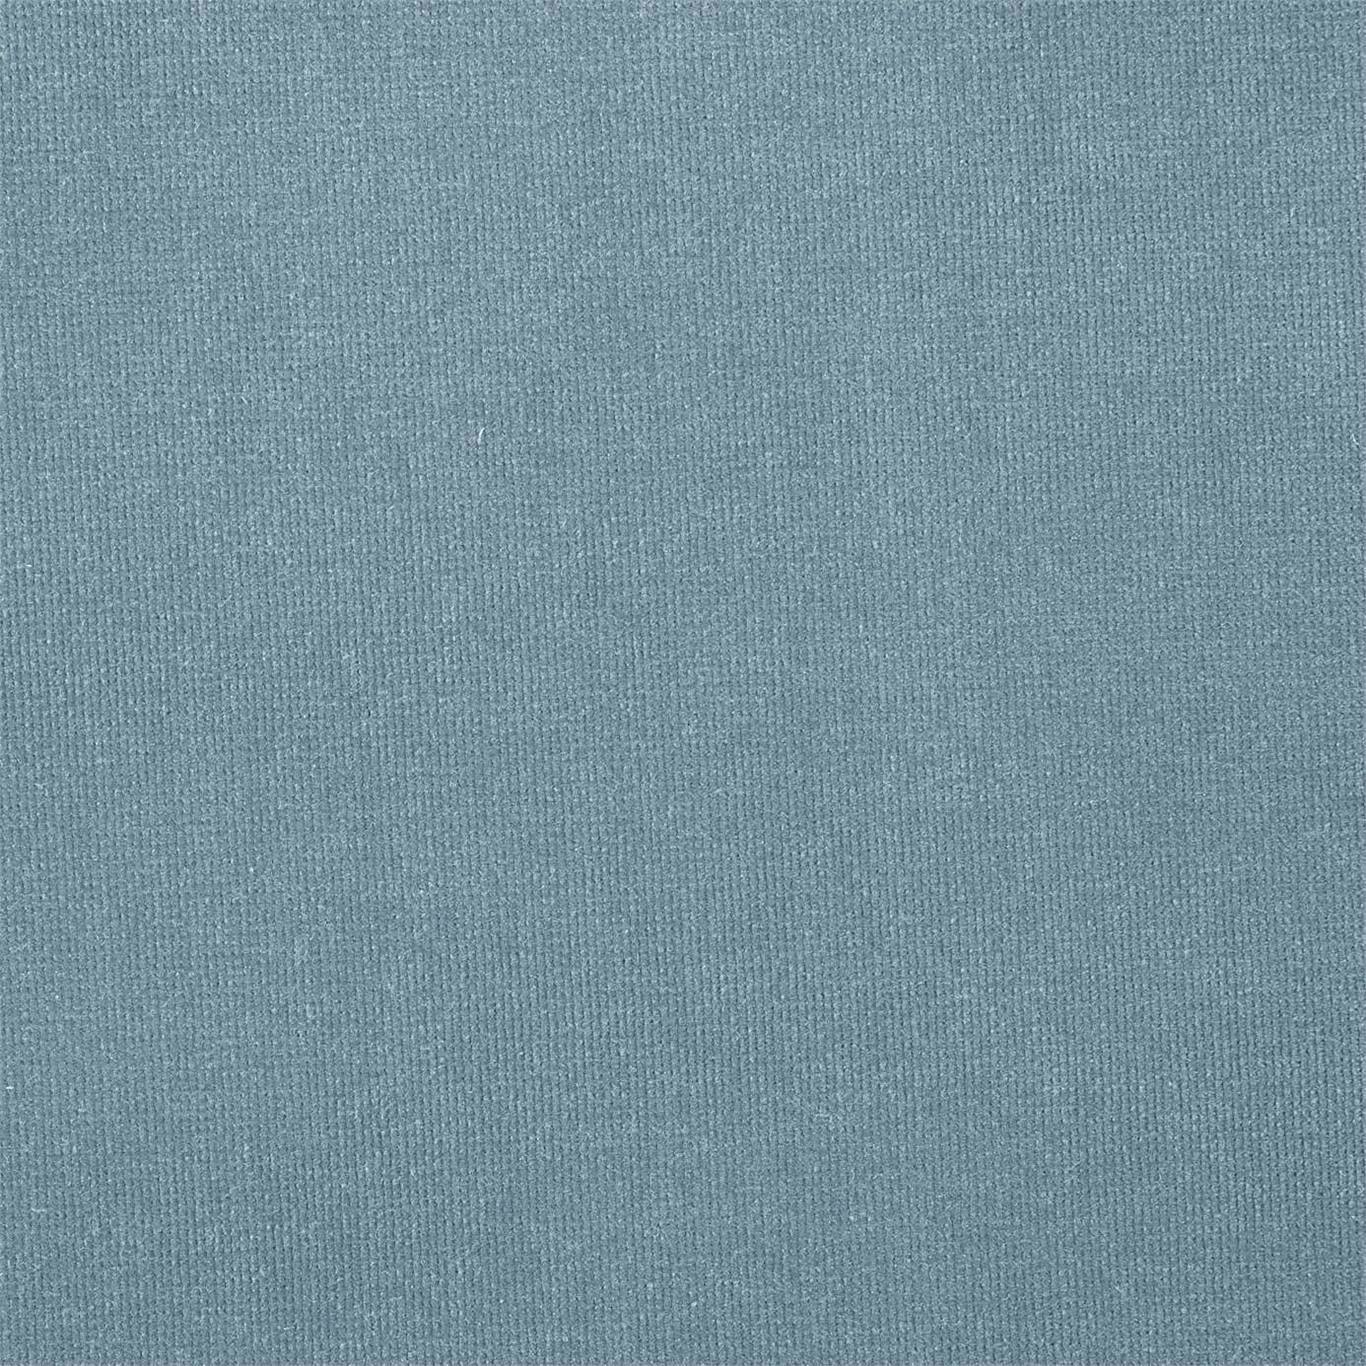 Plush Velvet Cornflower Blue Fabric by HAR